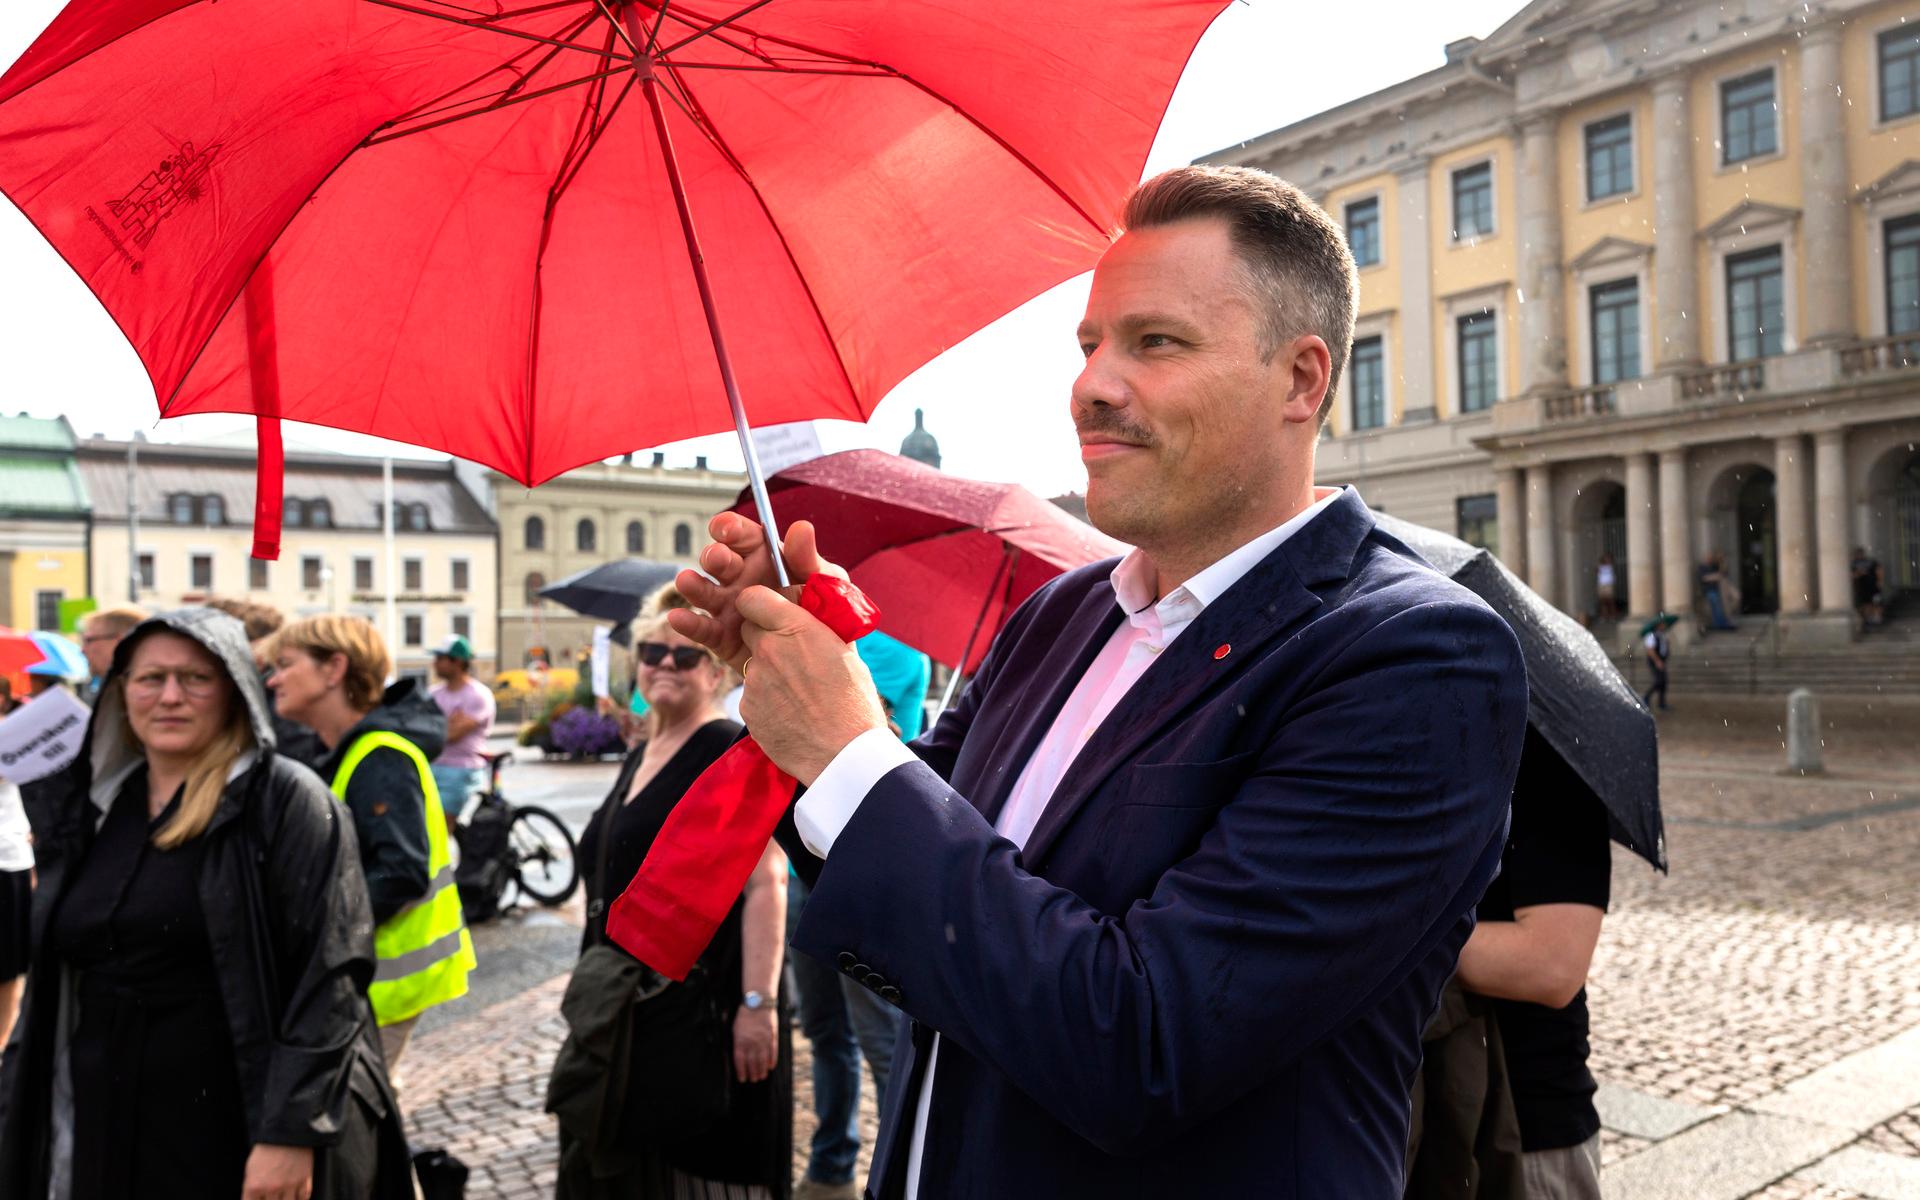 Vänsterpartiets Daniel Bernmar lyssnade och talade under manifestationen. Han riktade bland annat kritik mot hur pengarna har disponerats de senaste fyra åren.